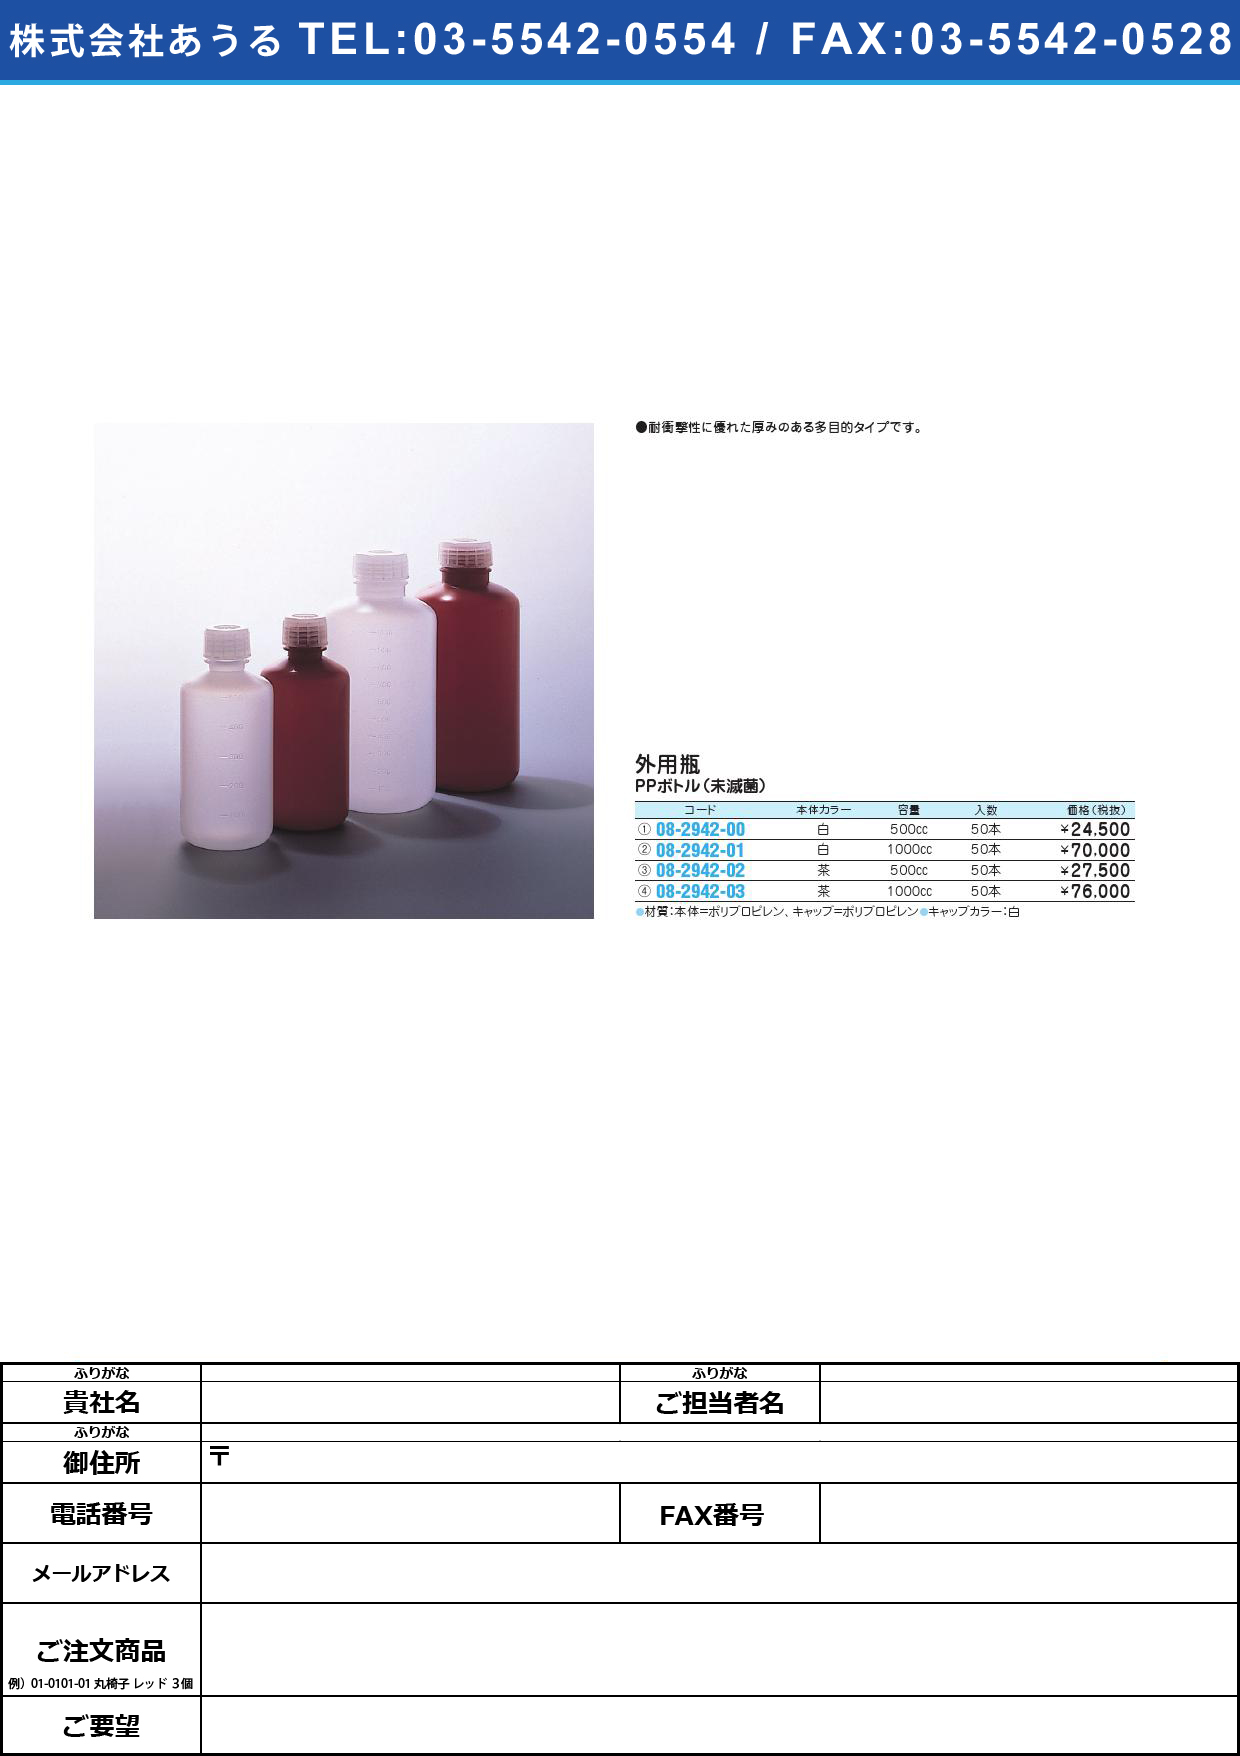 投薬瓶ＰＰボトル茶（未滅菌） PPﾎﾞﾄﾙﾁｬ(ﾐﾒｯｷﾝ) 500CC(50ﾎﾟﾝｲﾘ)【1梱単位】(08-2942-02)